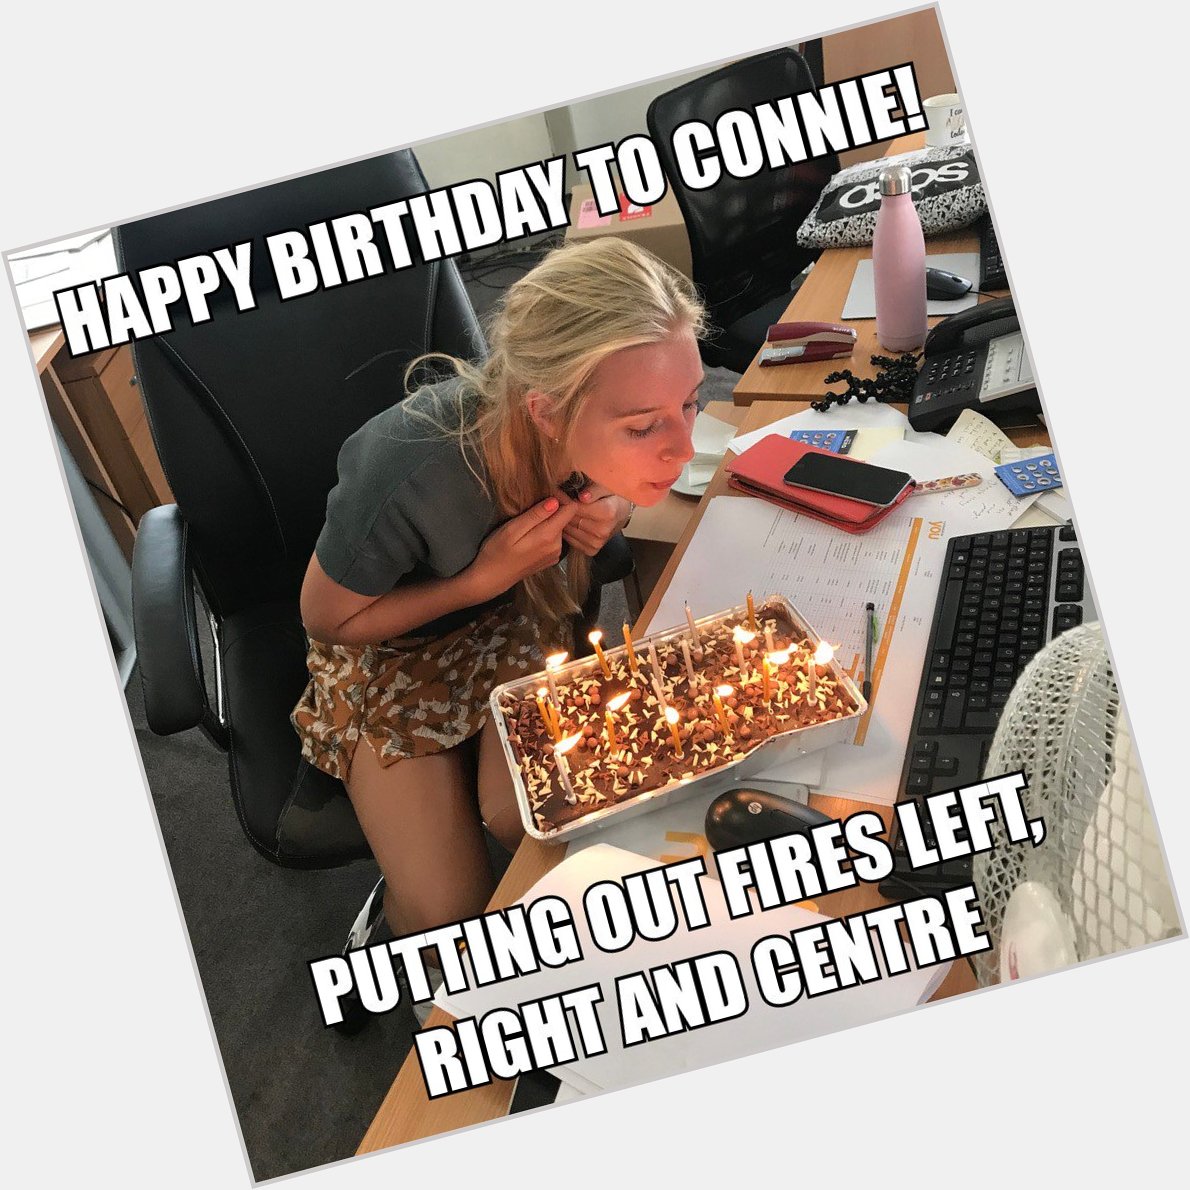 Happy Birthday to YOU marketing guru, Connie Smith  